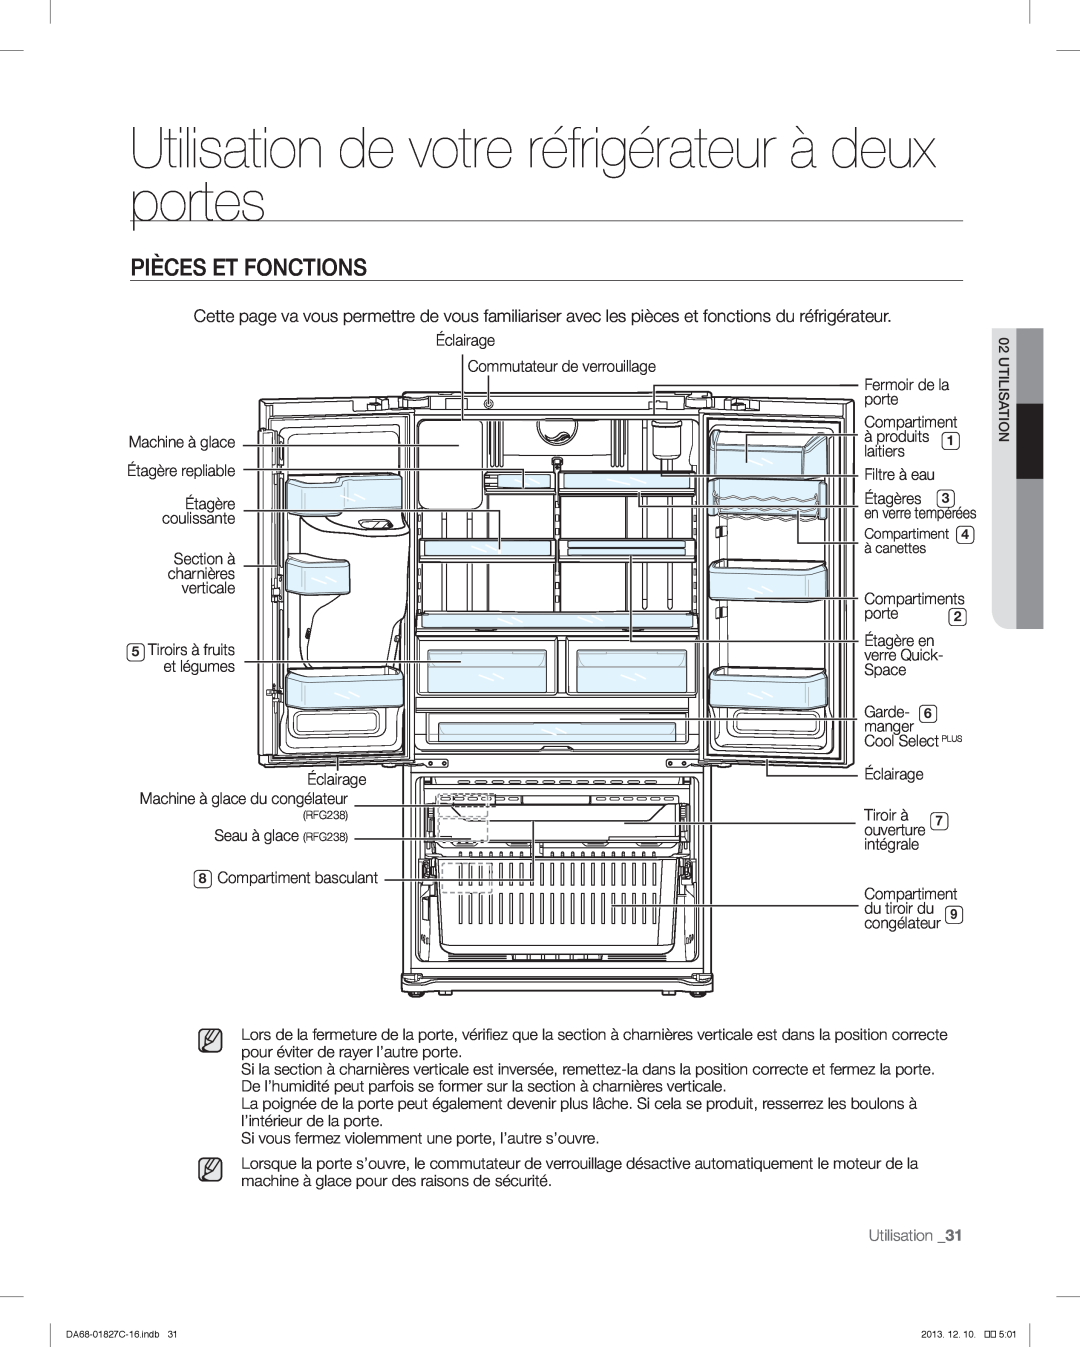 Samsung RFG237AARS user manual Pièces Et Fonctions, Utilisation de votre réfrigérateur à deux portes 